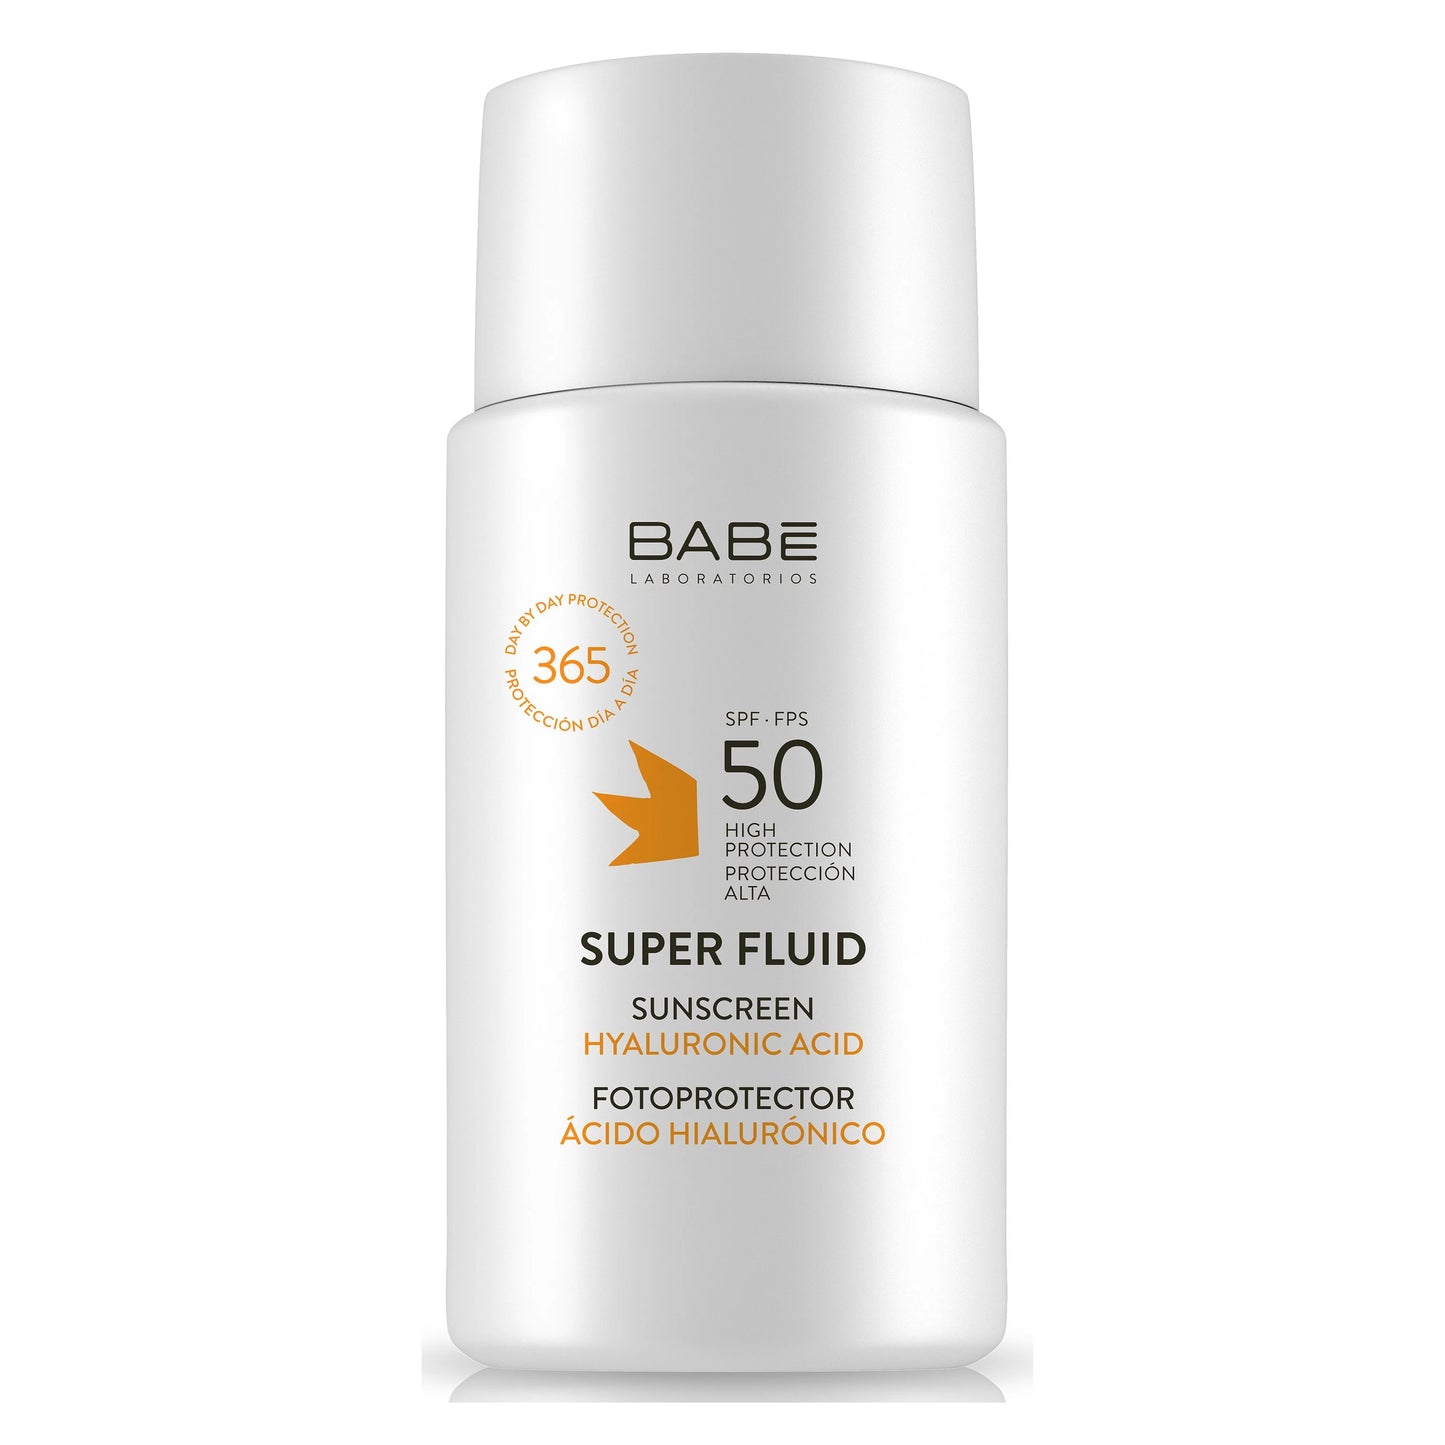 BABE Super Fluid Sunscreen SPF 50